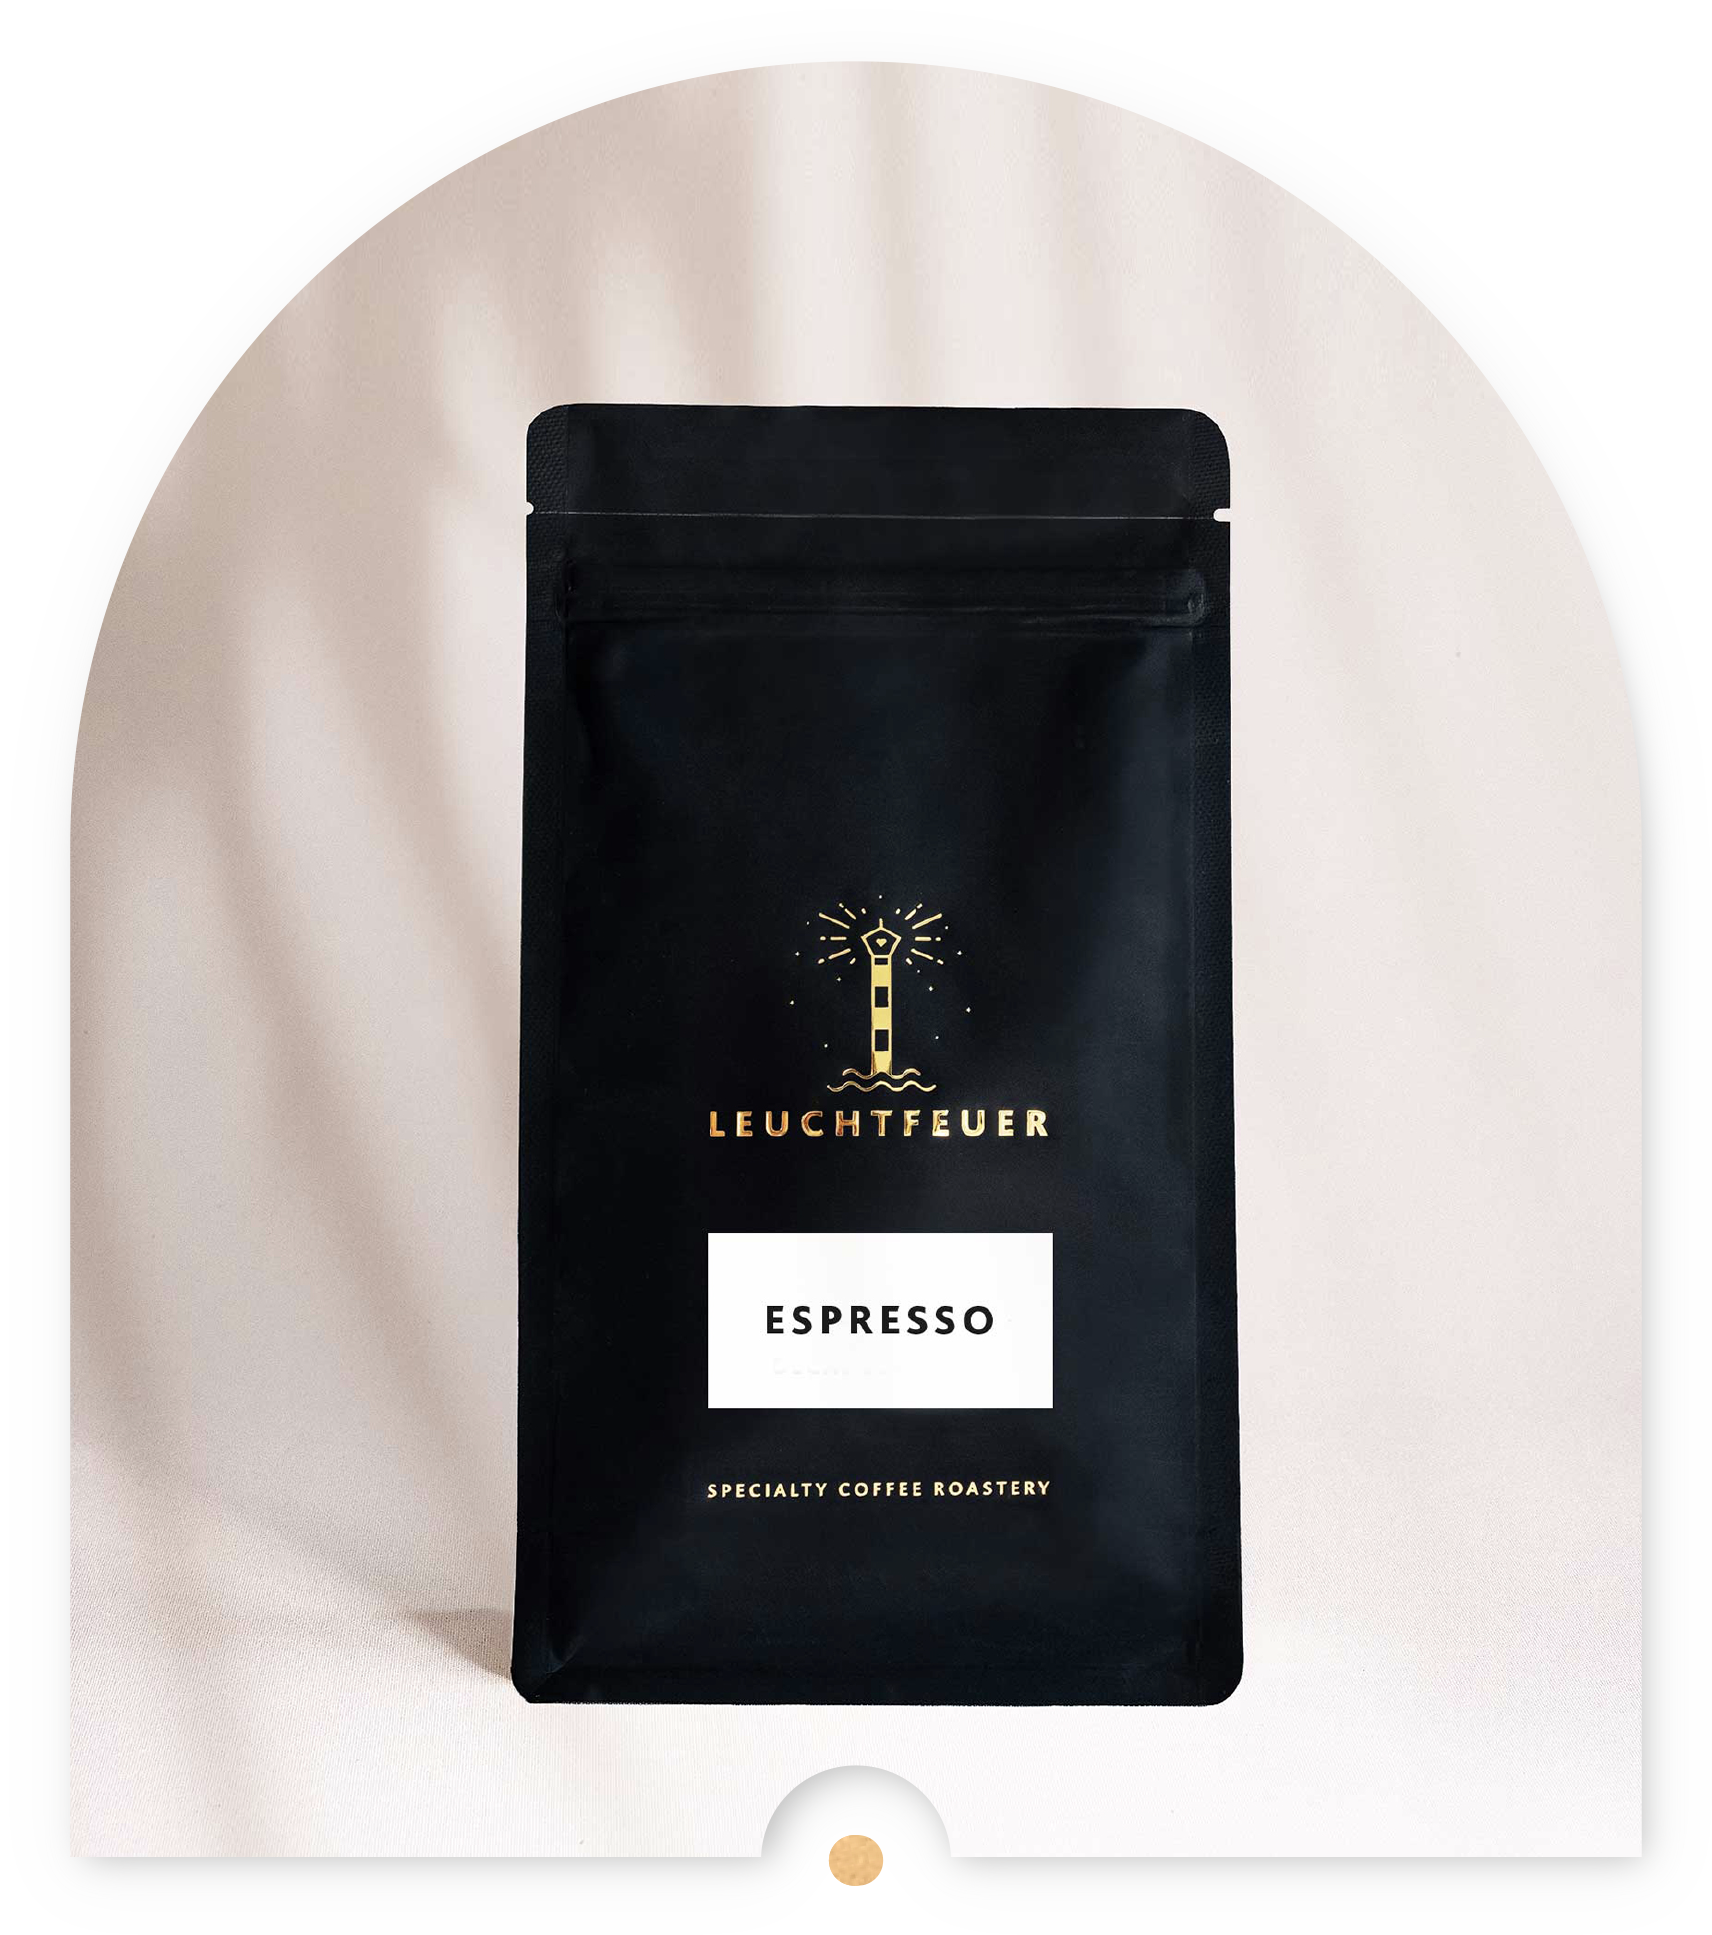 Espresso Specialty Coffee • Single Origin